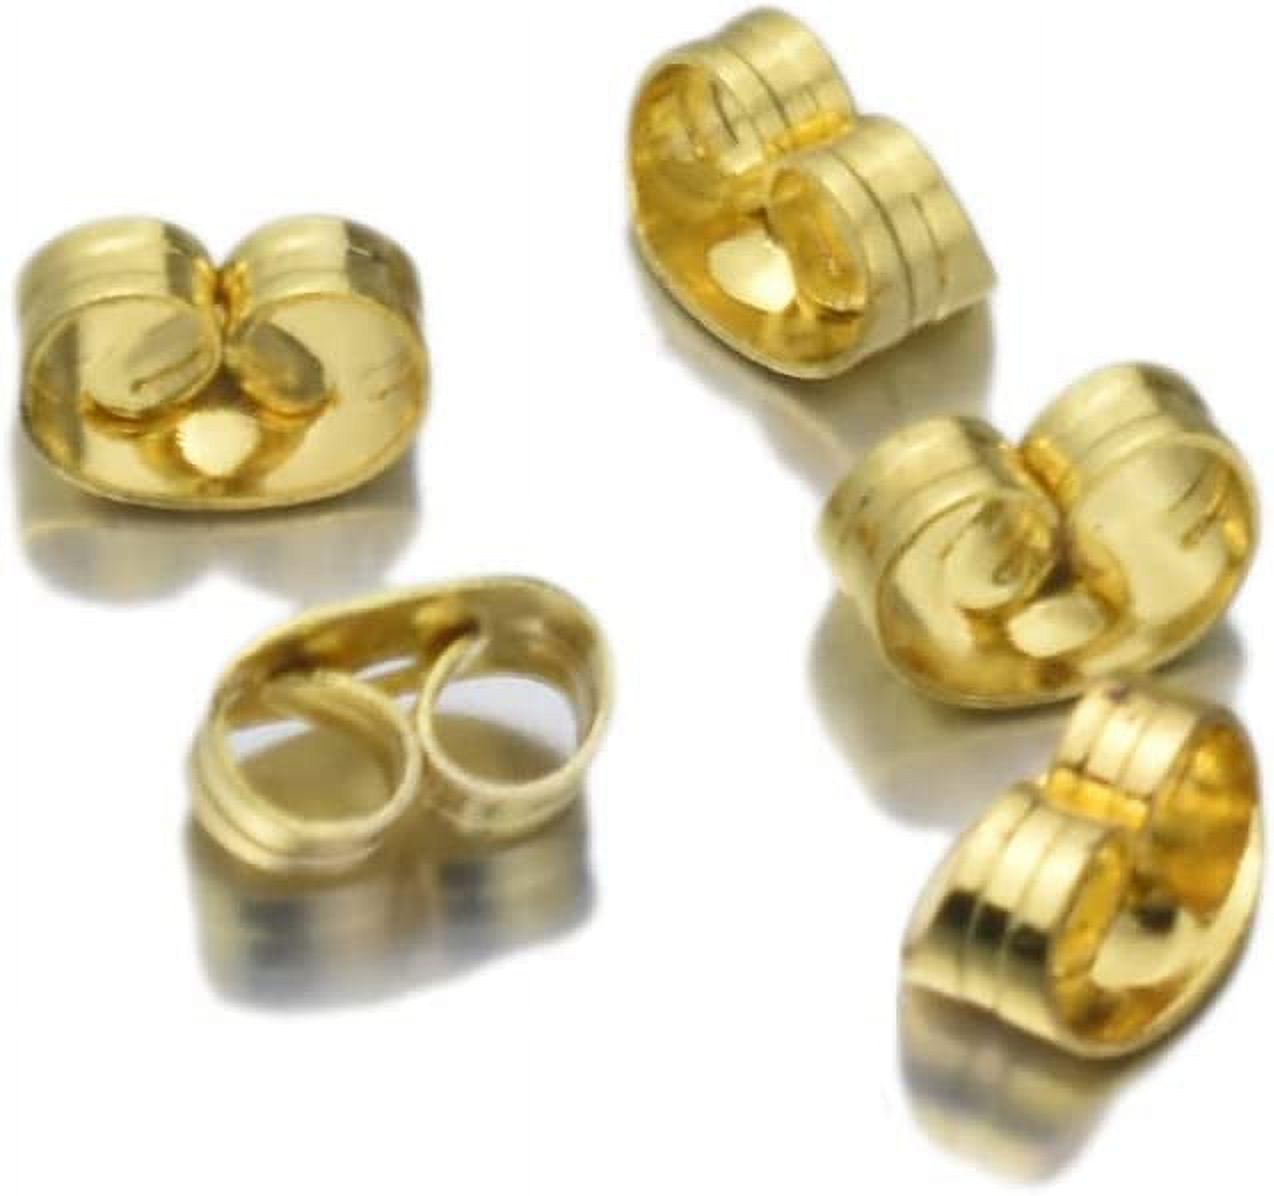 100pcs Stainless Steel Hard Earring Backs Butterfly Ear Back Stud Earrings Care Cap Women's Earring DIY Jewelry Ear Pin Back XS426 (Color : Gold) - image 1 of 4